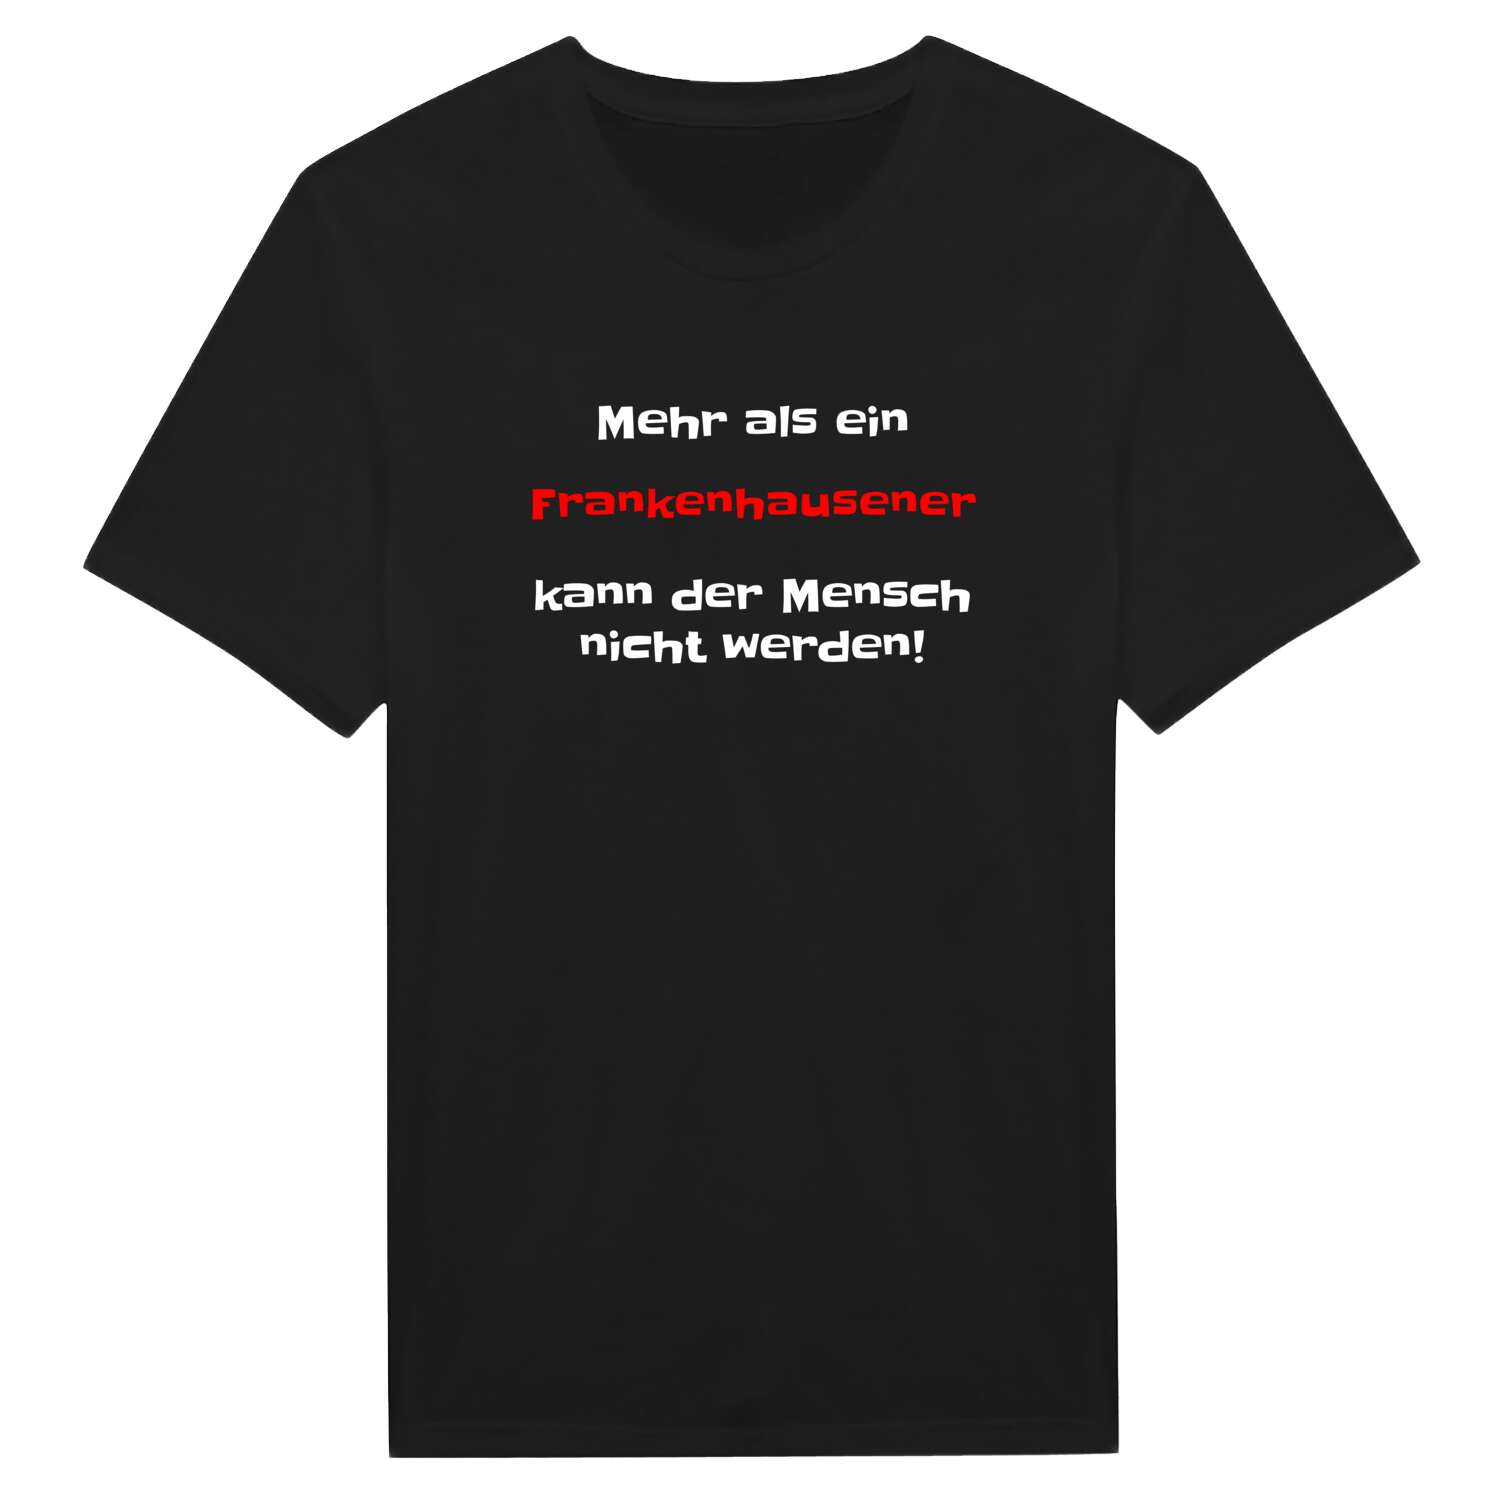 Frankenhausen T-Shirt »Mehr als ein«